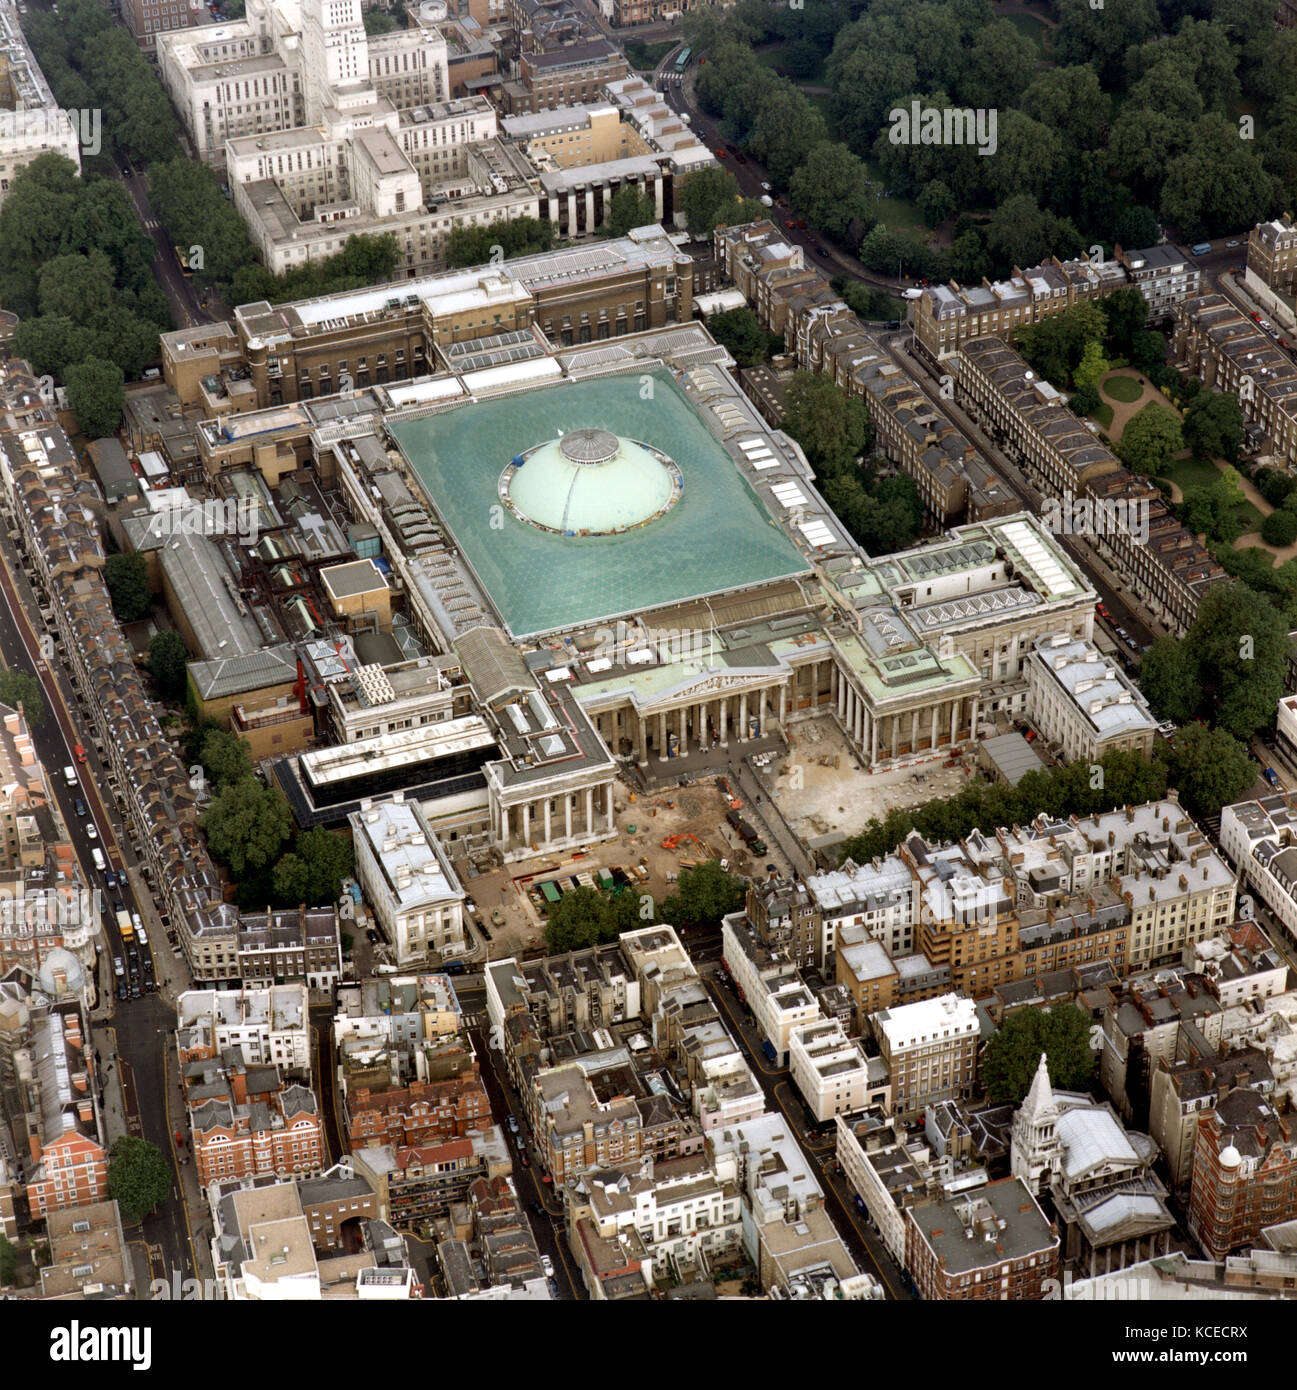 British museum, Great Russell Street, Camden, Grand Londres. une vue aérienne de la British Museum à russell square. Il a été construit dans un style classique sty Banque D'Images